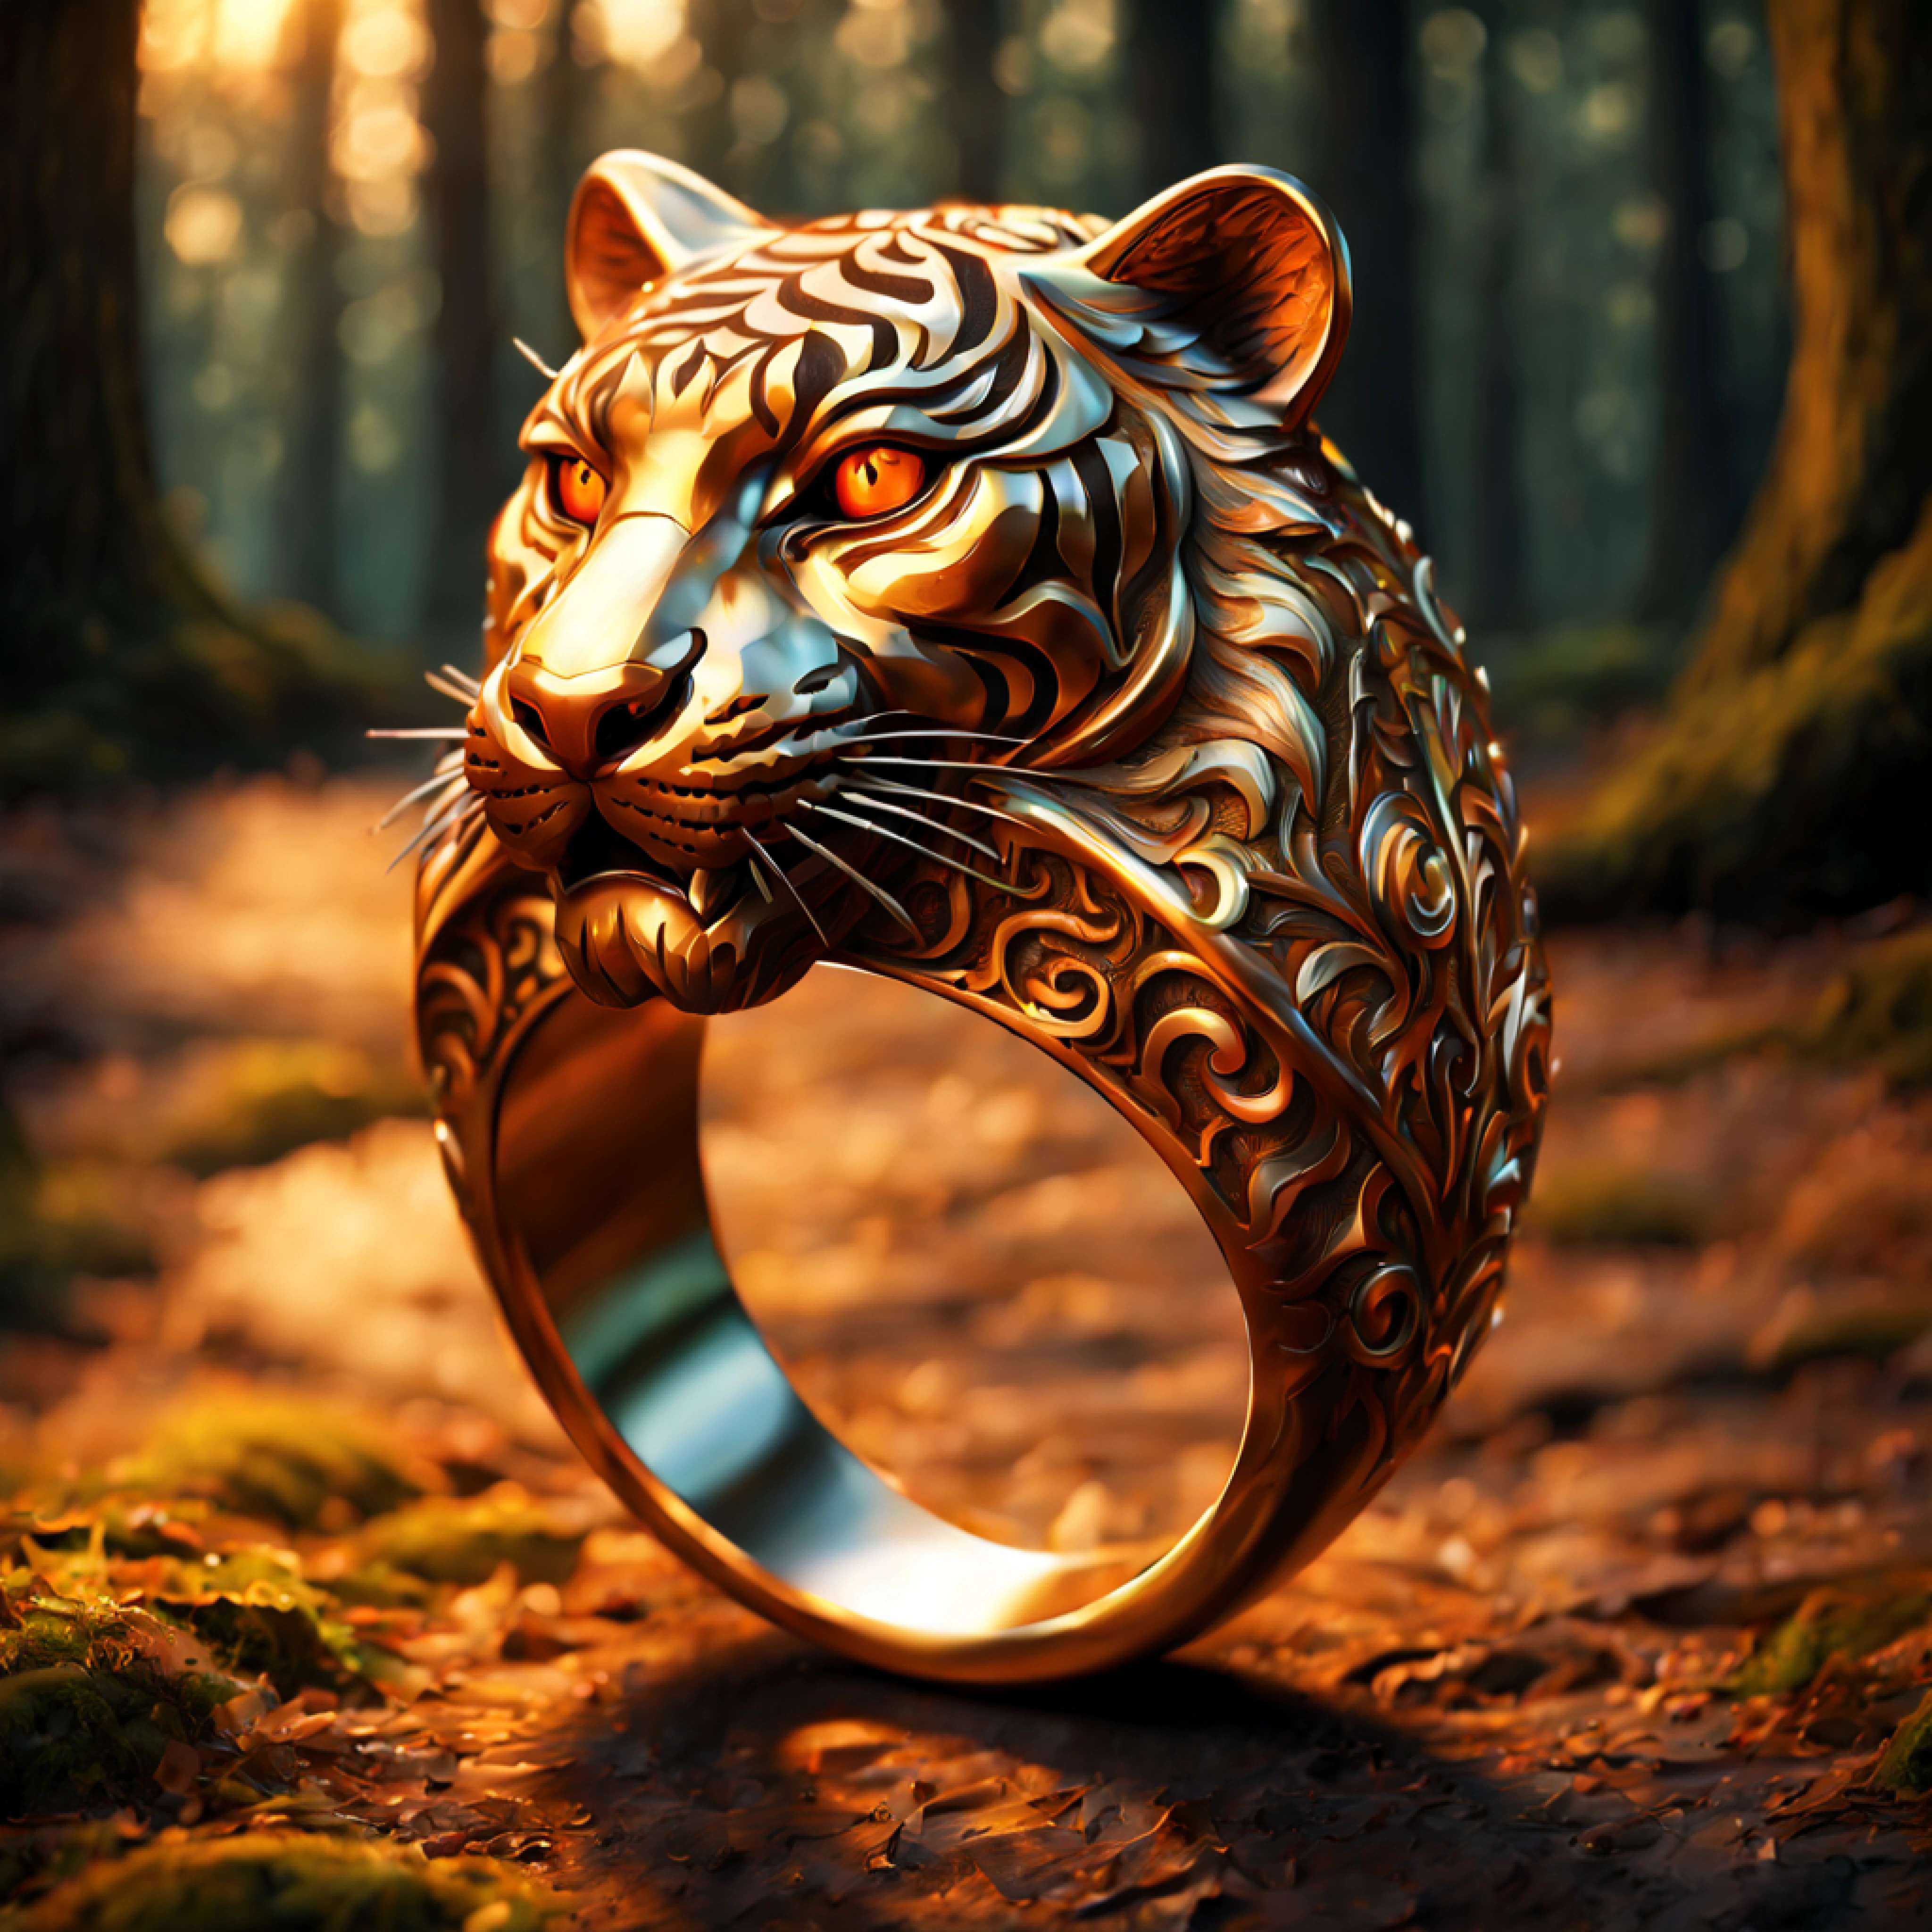 (Desenho 3D), (anel majestoso com intrincadas gravuras de tigre:1.2), ricos padrões ornamentados, laranja (reflexão metálica:1.2), (fundo de floresta romântica:1.4)